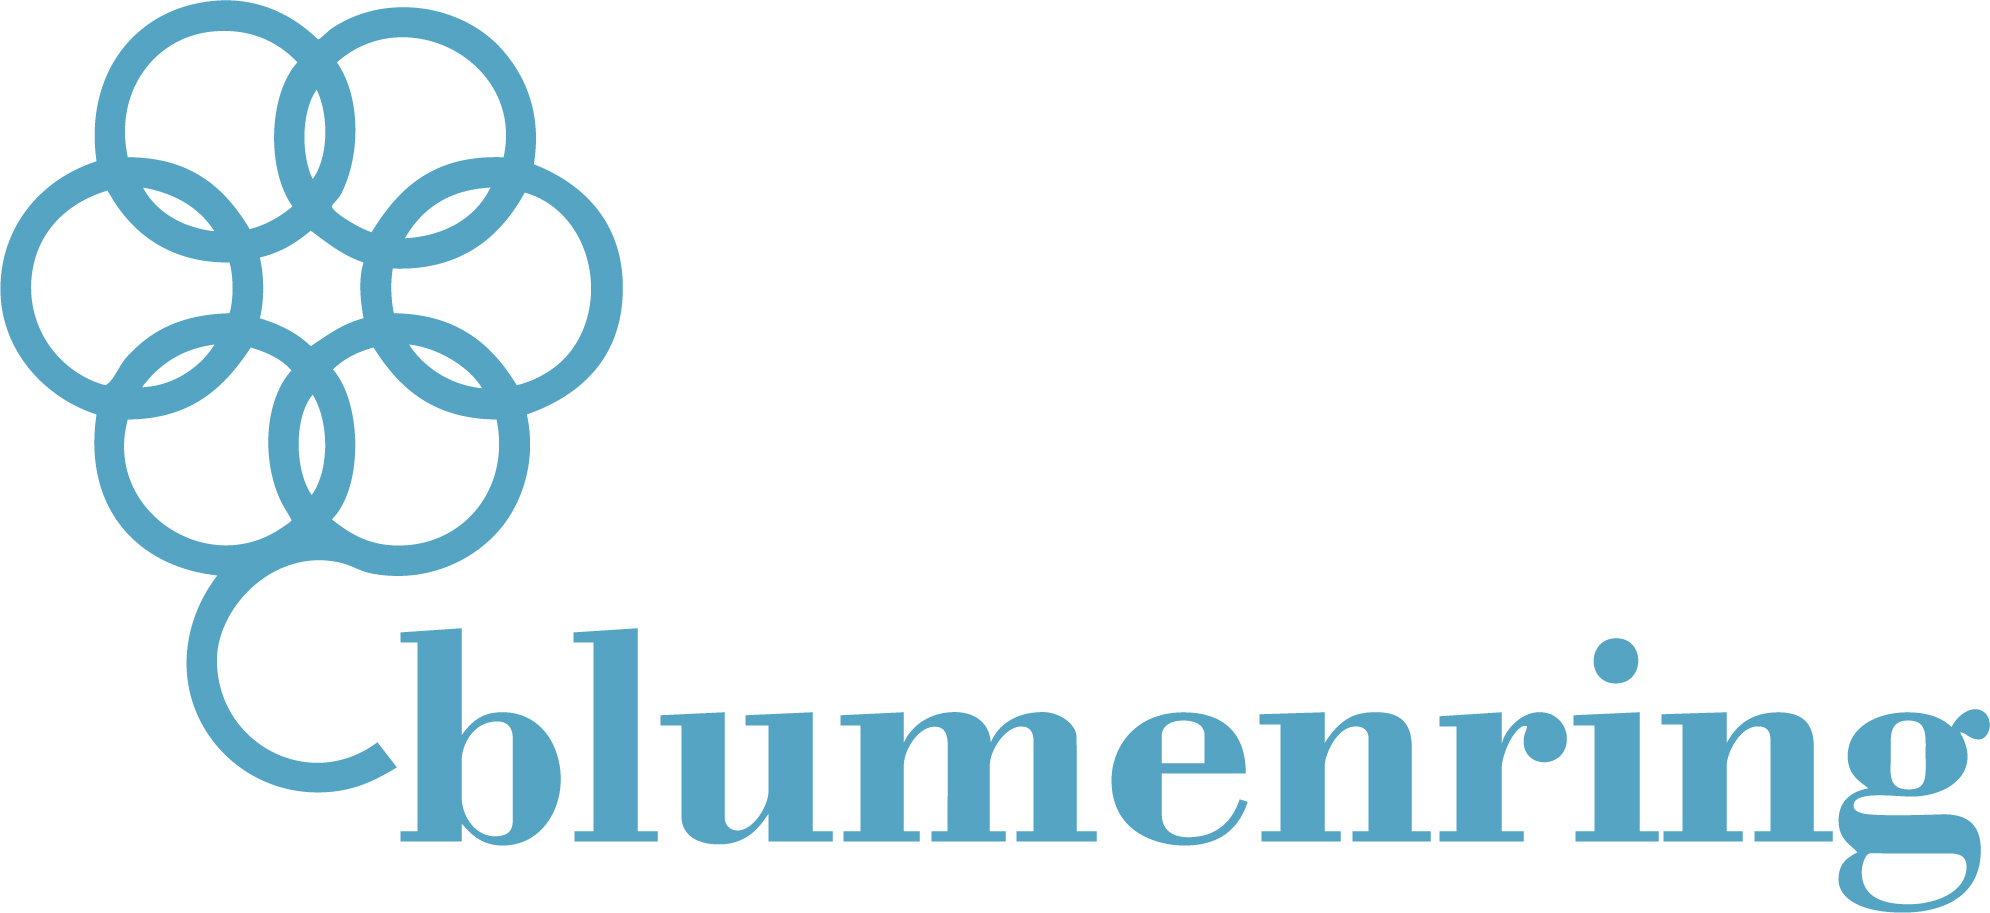 Chemnitzer Blumenring logo